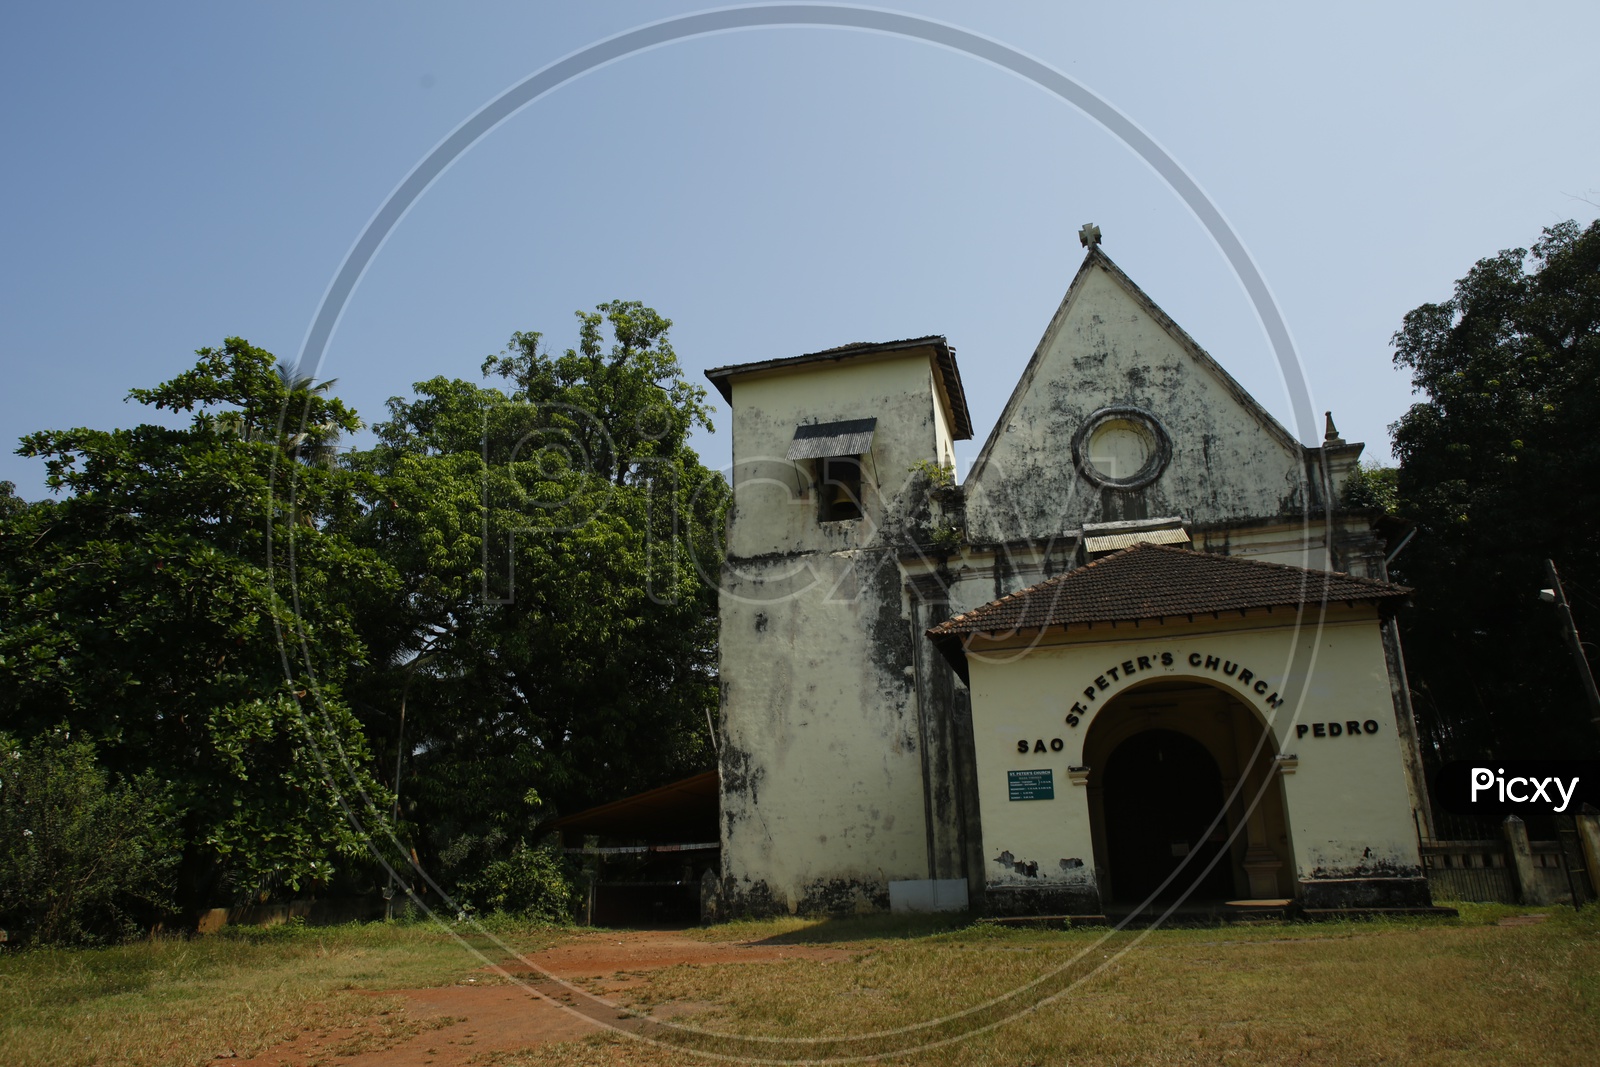 Church / Goan Churches / Churches in Goa